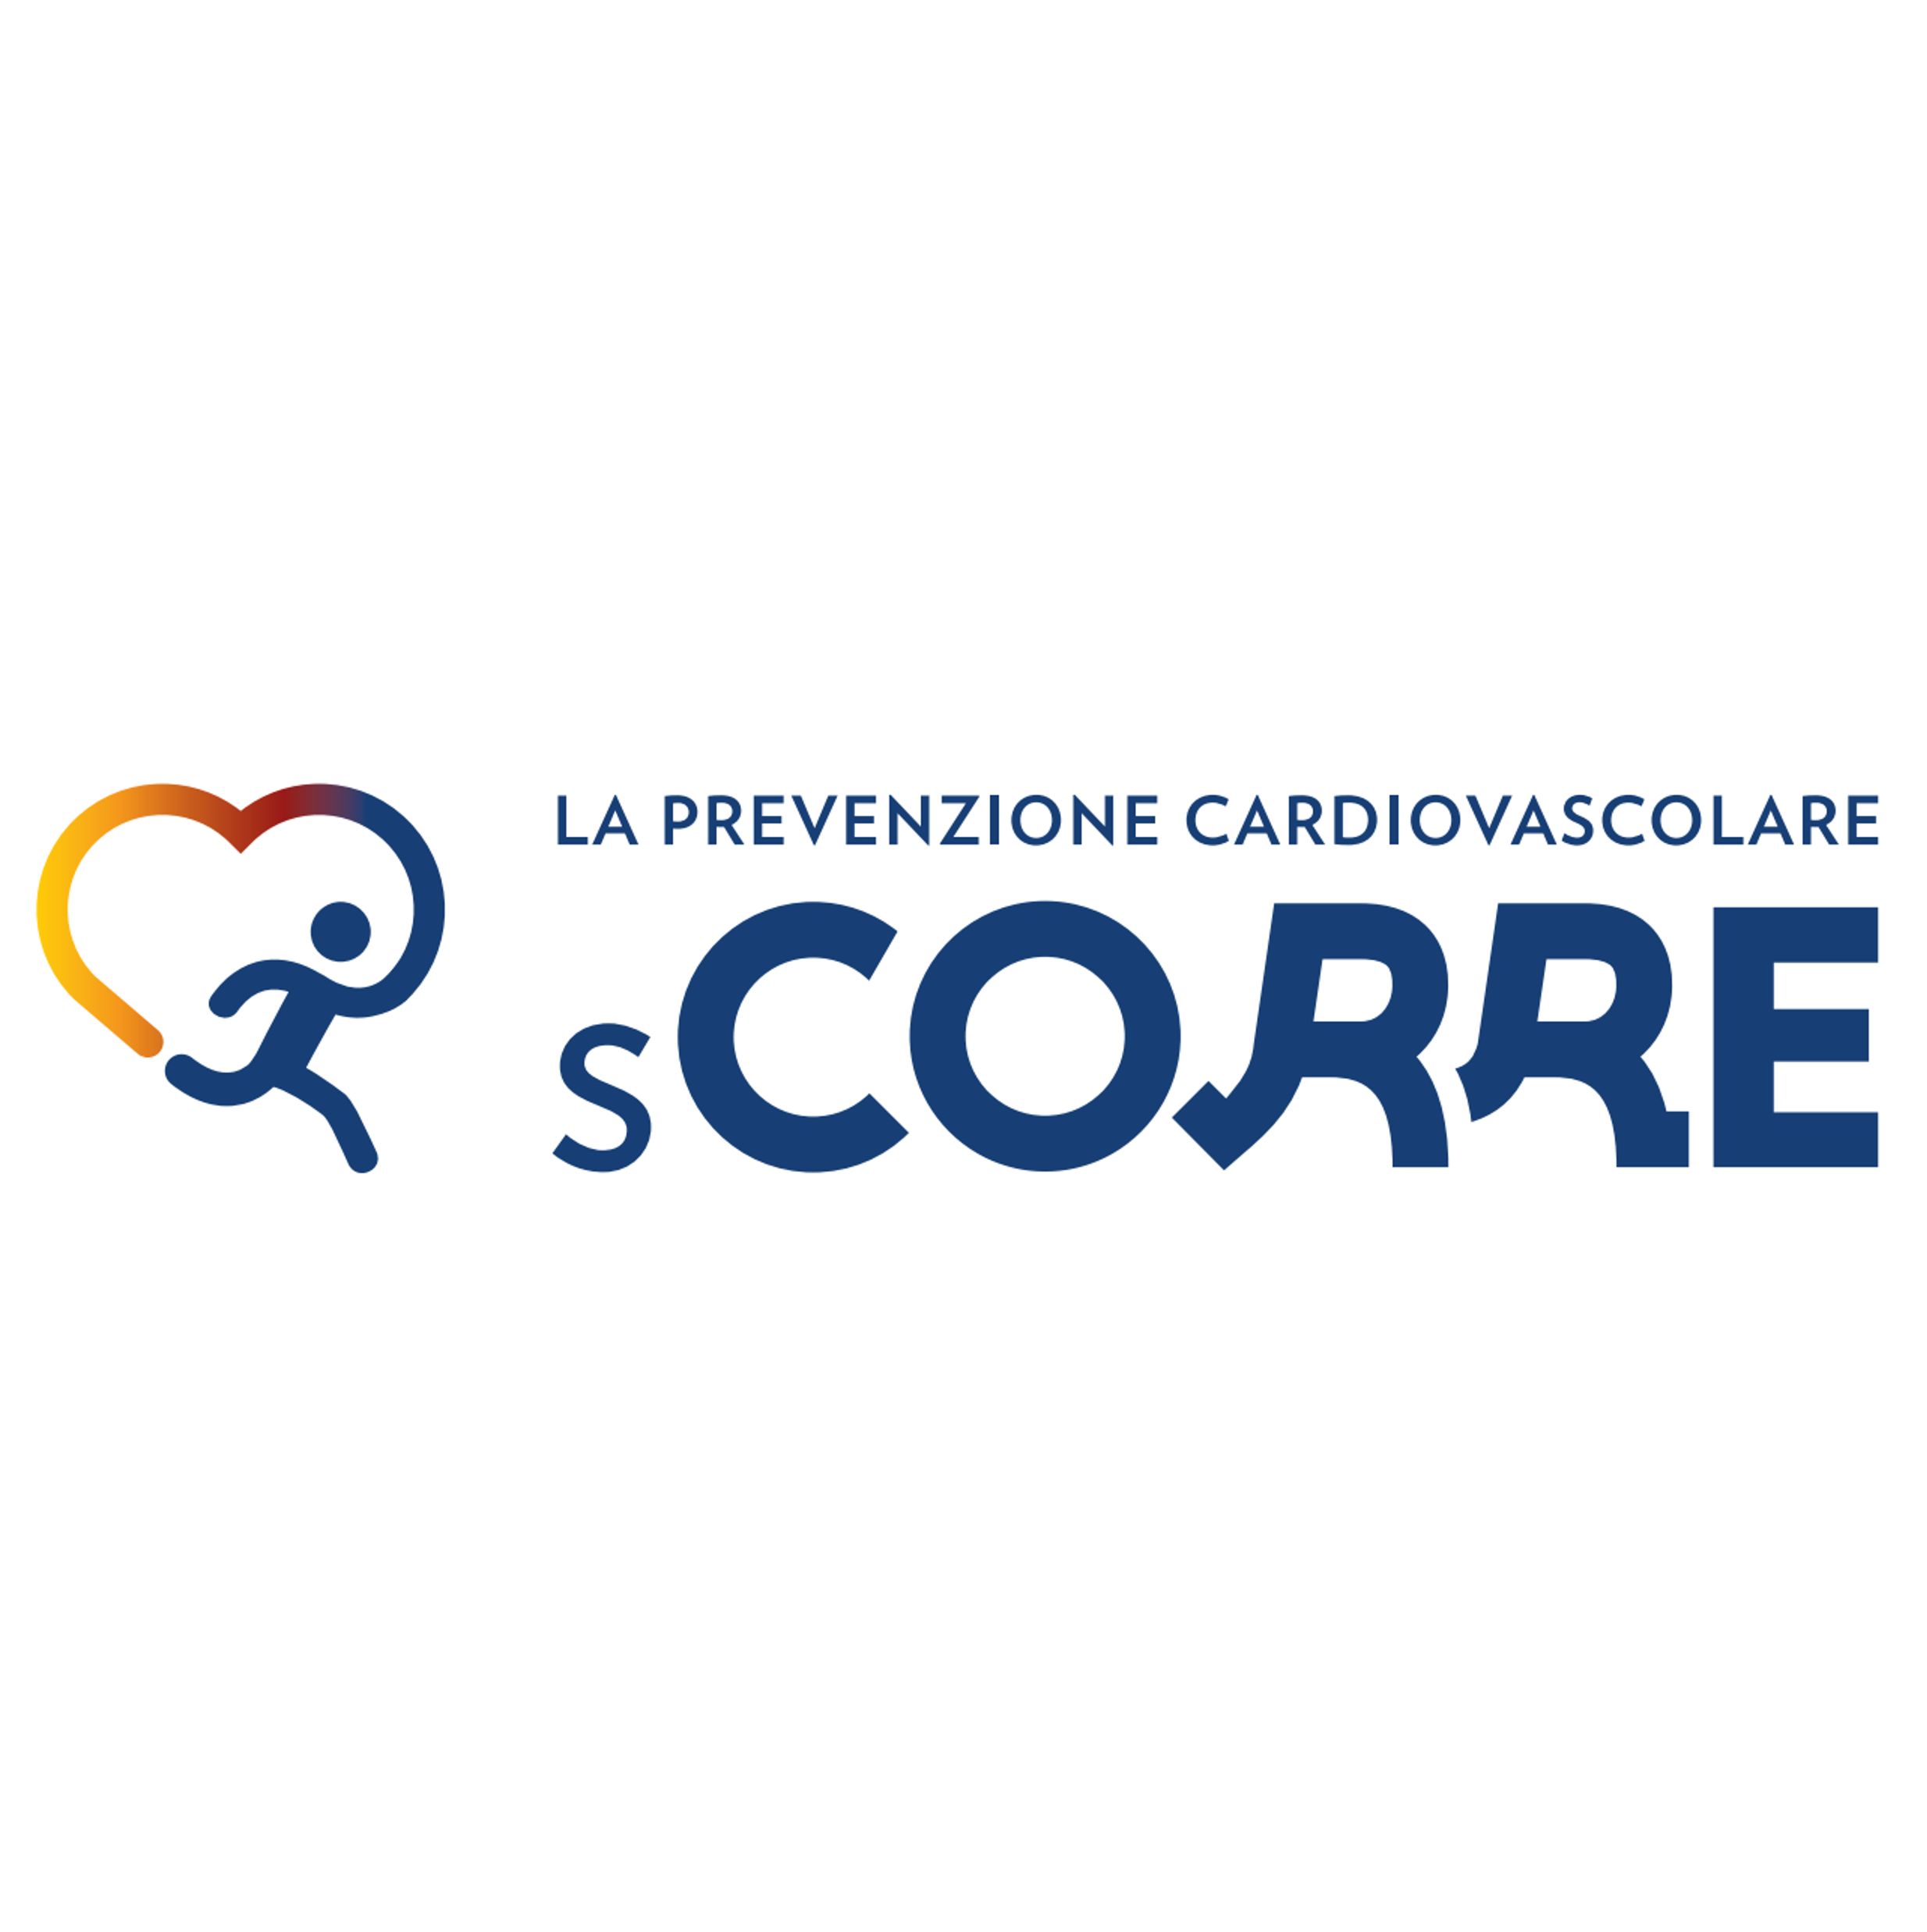 La Prevenzione Cardiovascolare sCORRE in Italia